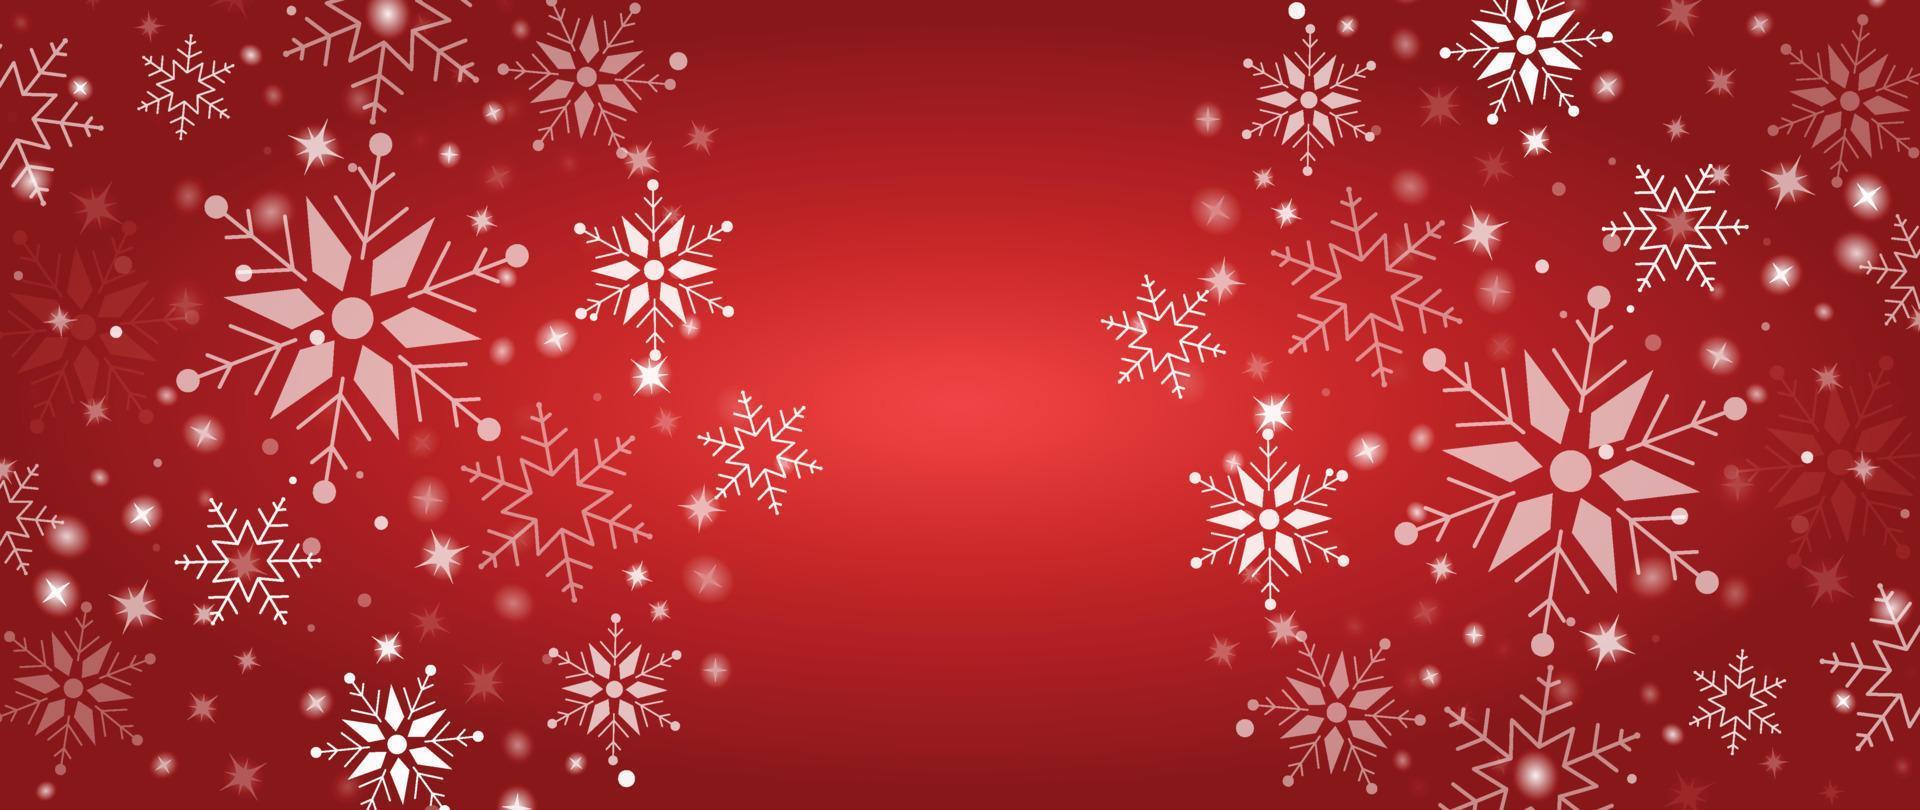 Ilustración de vector de fondo de copo de nieve de invierno elegante. copo de nieve decorativo de lujo y brillo sobre fondo rojo degradado. diseño adecuado para tarjeta de invitación, saludo, papel tapiz, afiche, pancarta.